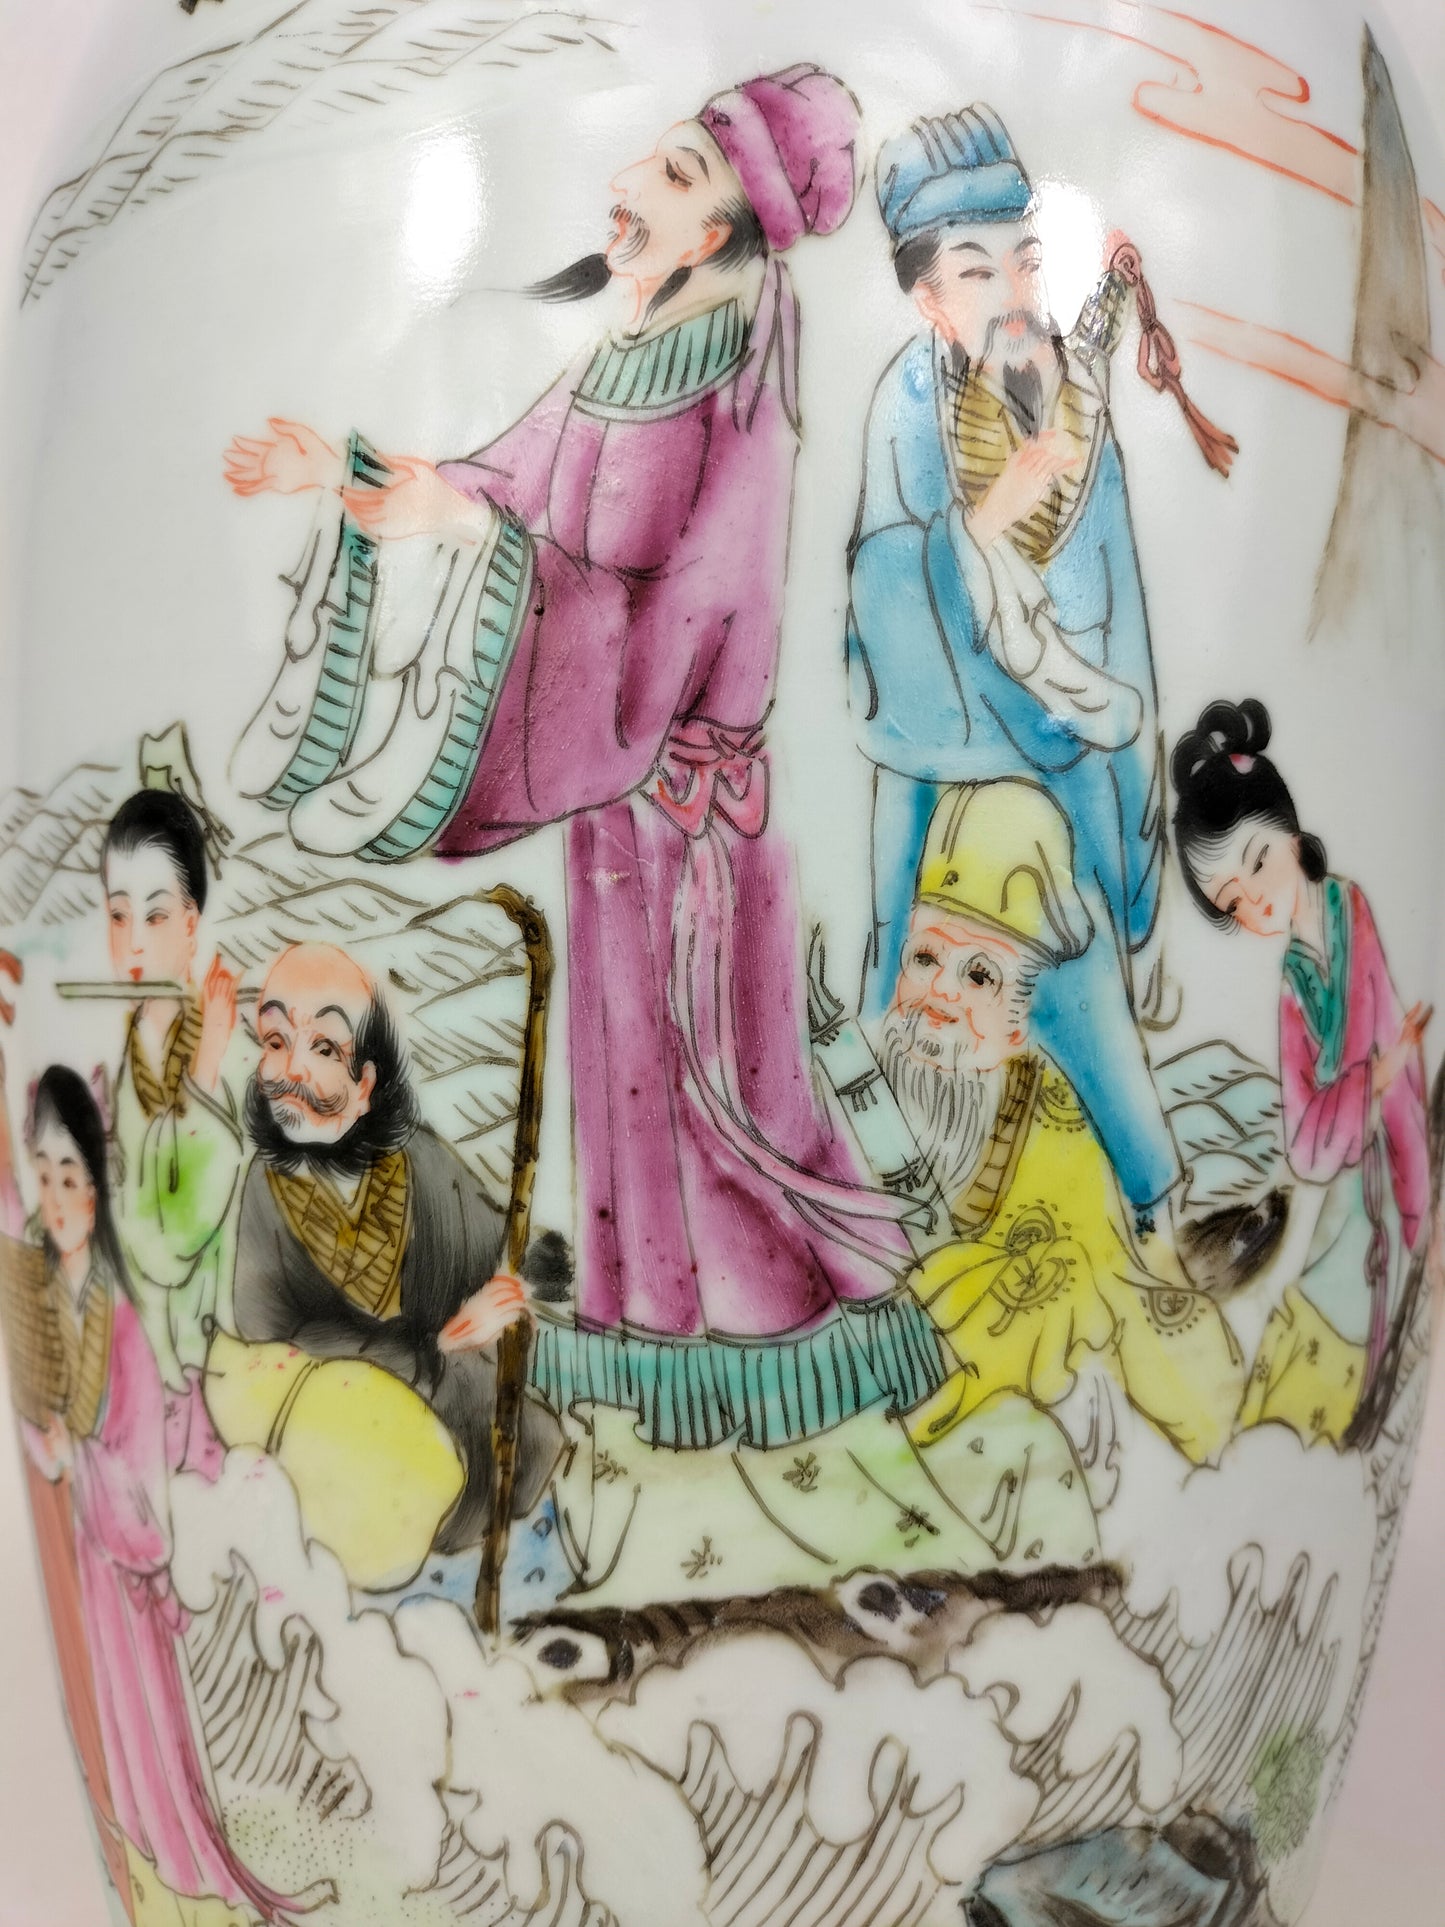 大型粉彩八仙花瓶//乾隆款 - 20 世纪